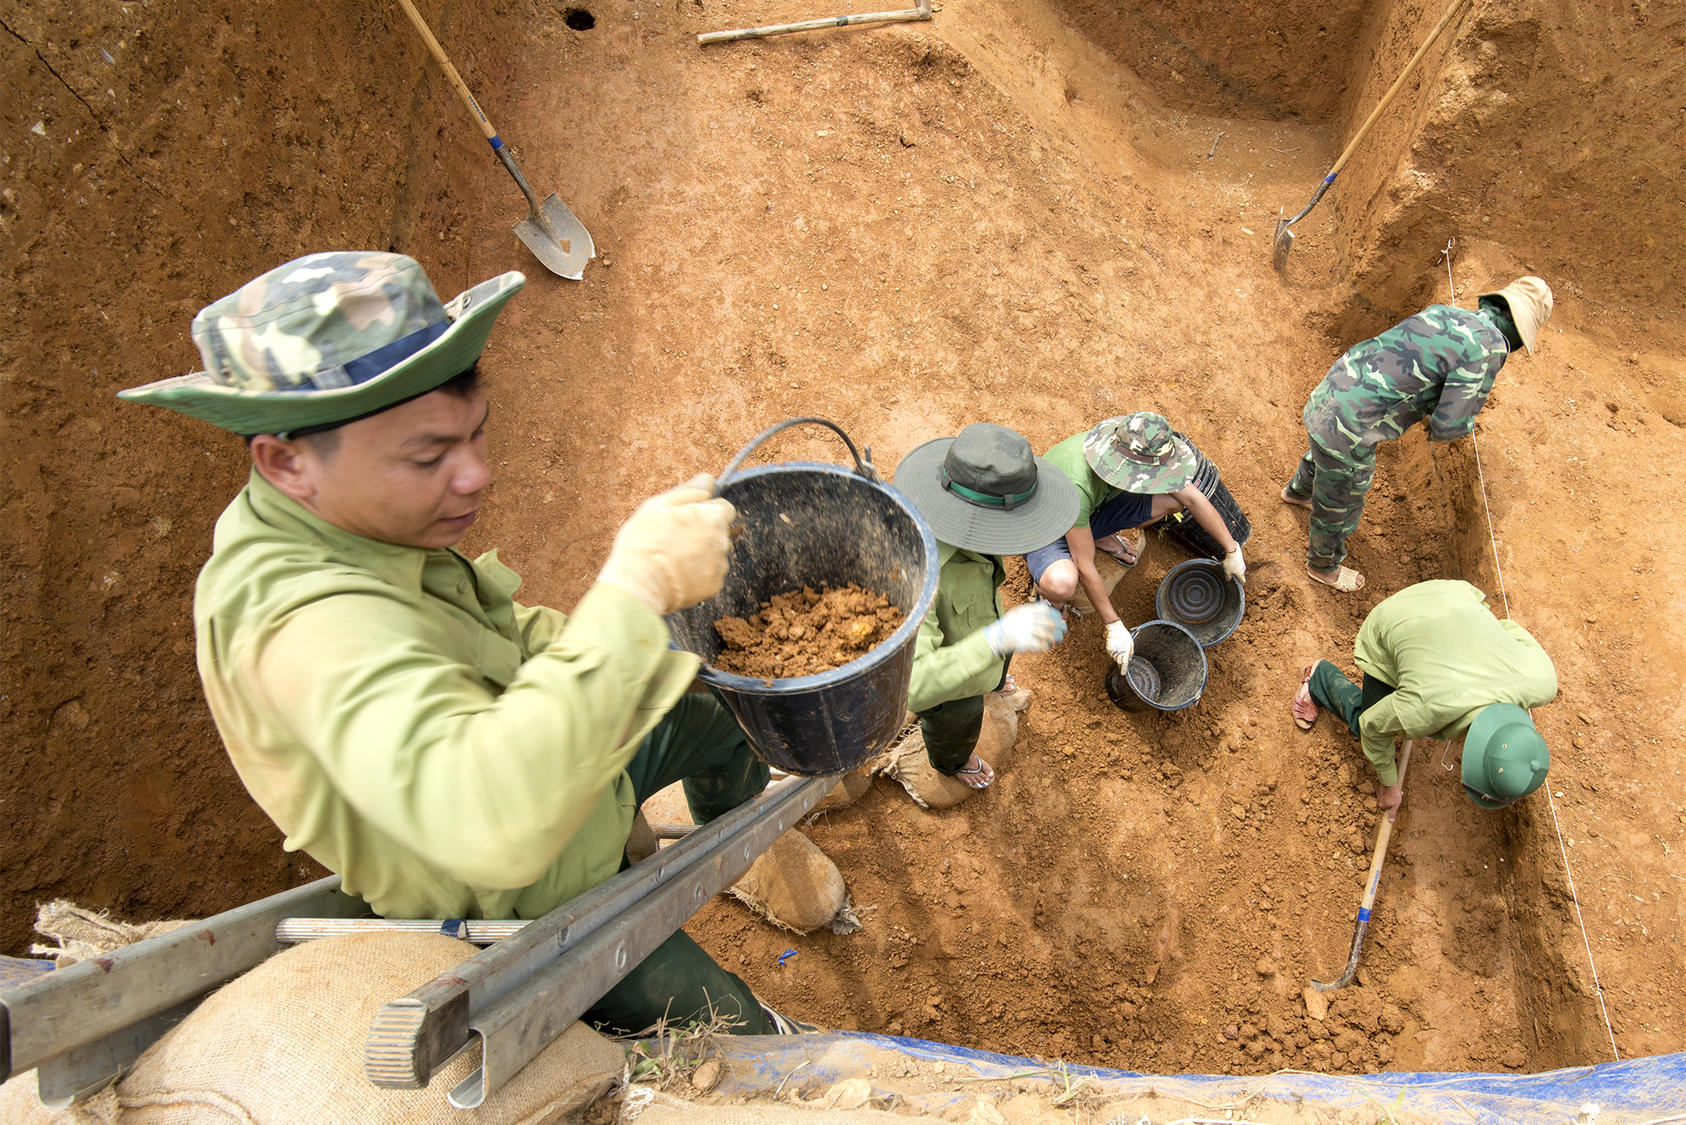 Nhóm làm việc Việt Nam thuộc Cơ quan Kiểm kê POW/MIA Bộ Quốc phòng Hoa Kỳ tìm kiếm hài cốt quân nhân Mỹ, tỉnh Thừa Thiên Huế, Việt Nam, 17 tháng 6 năm 2016. (Bộ Quốc phòng Hoa Kỳ/MC3 Armando Velez)